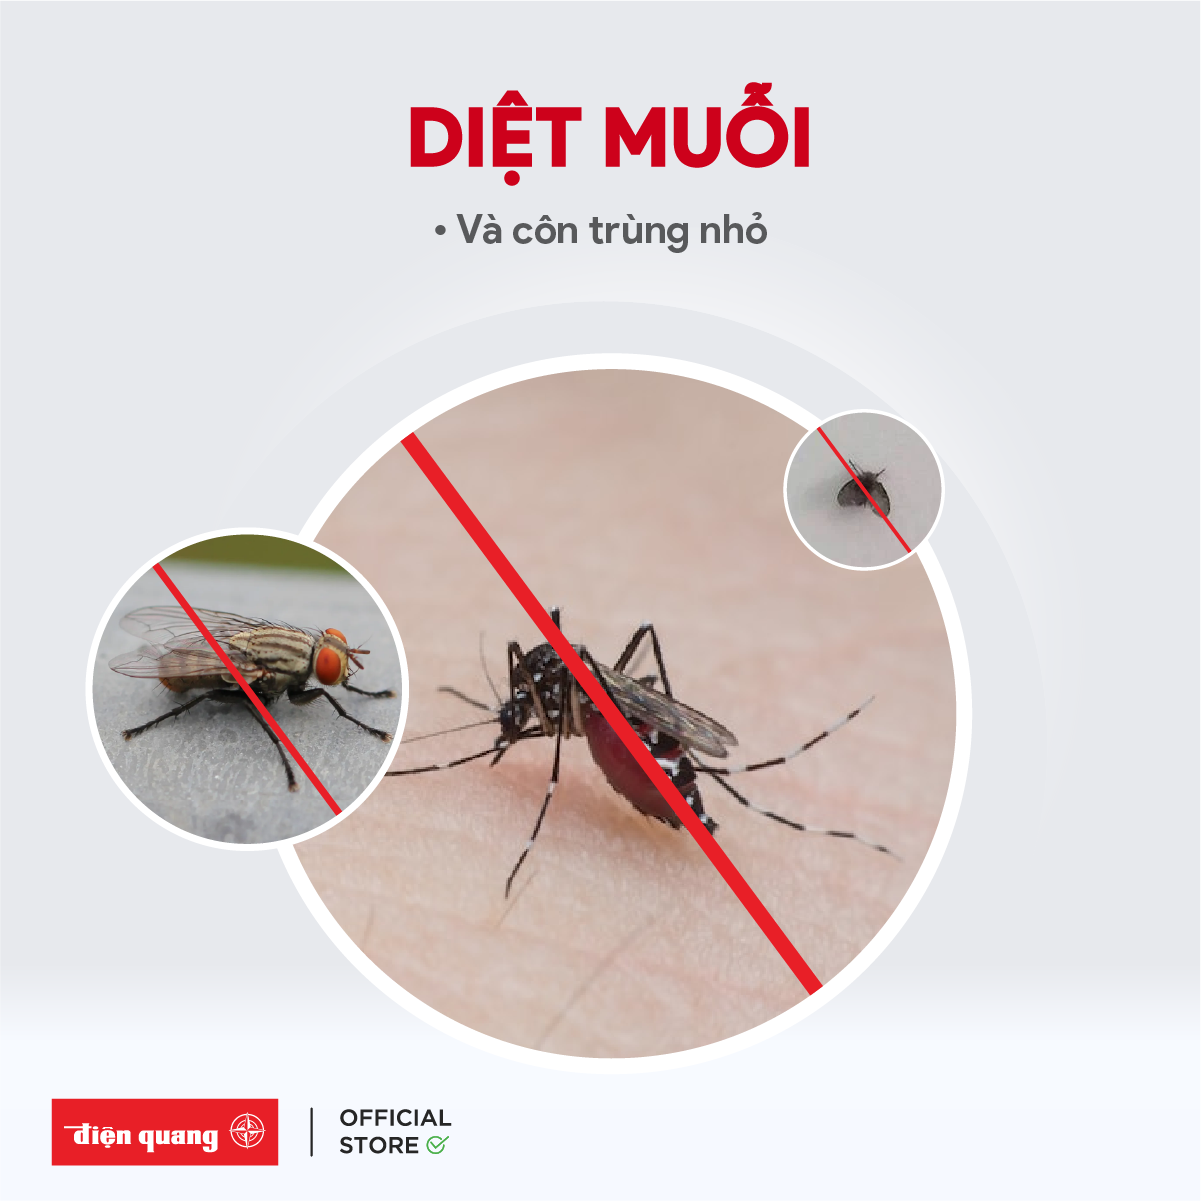 Đèn bắt muỗi thông minh Điện Quang, chủ động thu hút muỗi, an toàn, hiệu quả, không sử dụng hóa chất - Bảo hành 12 tháng